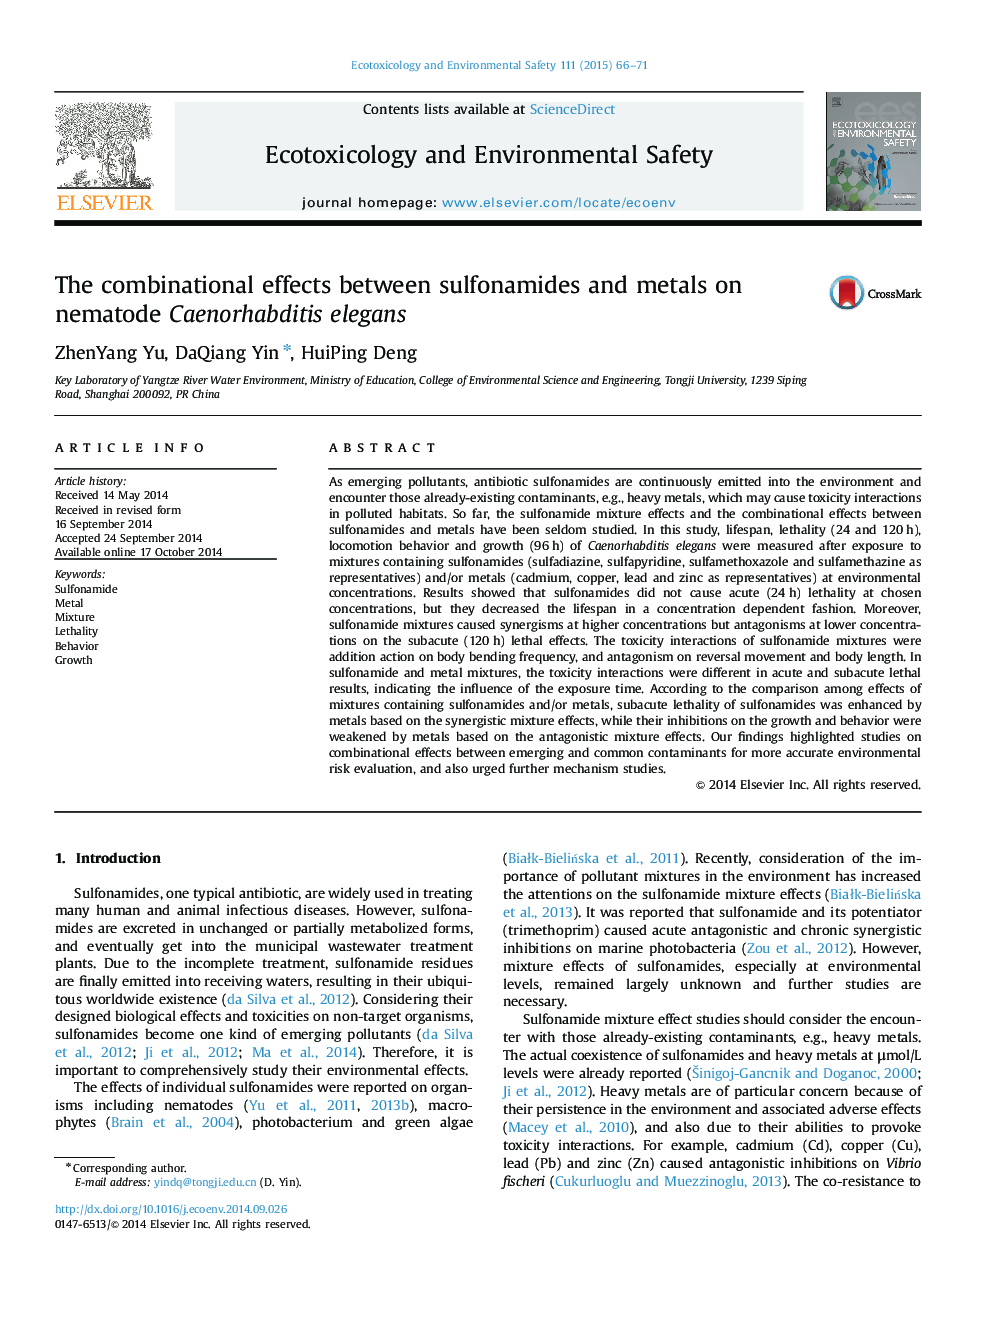 The combinational effects between sulfonamides and metals on nematode Caenorhabditis elegans